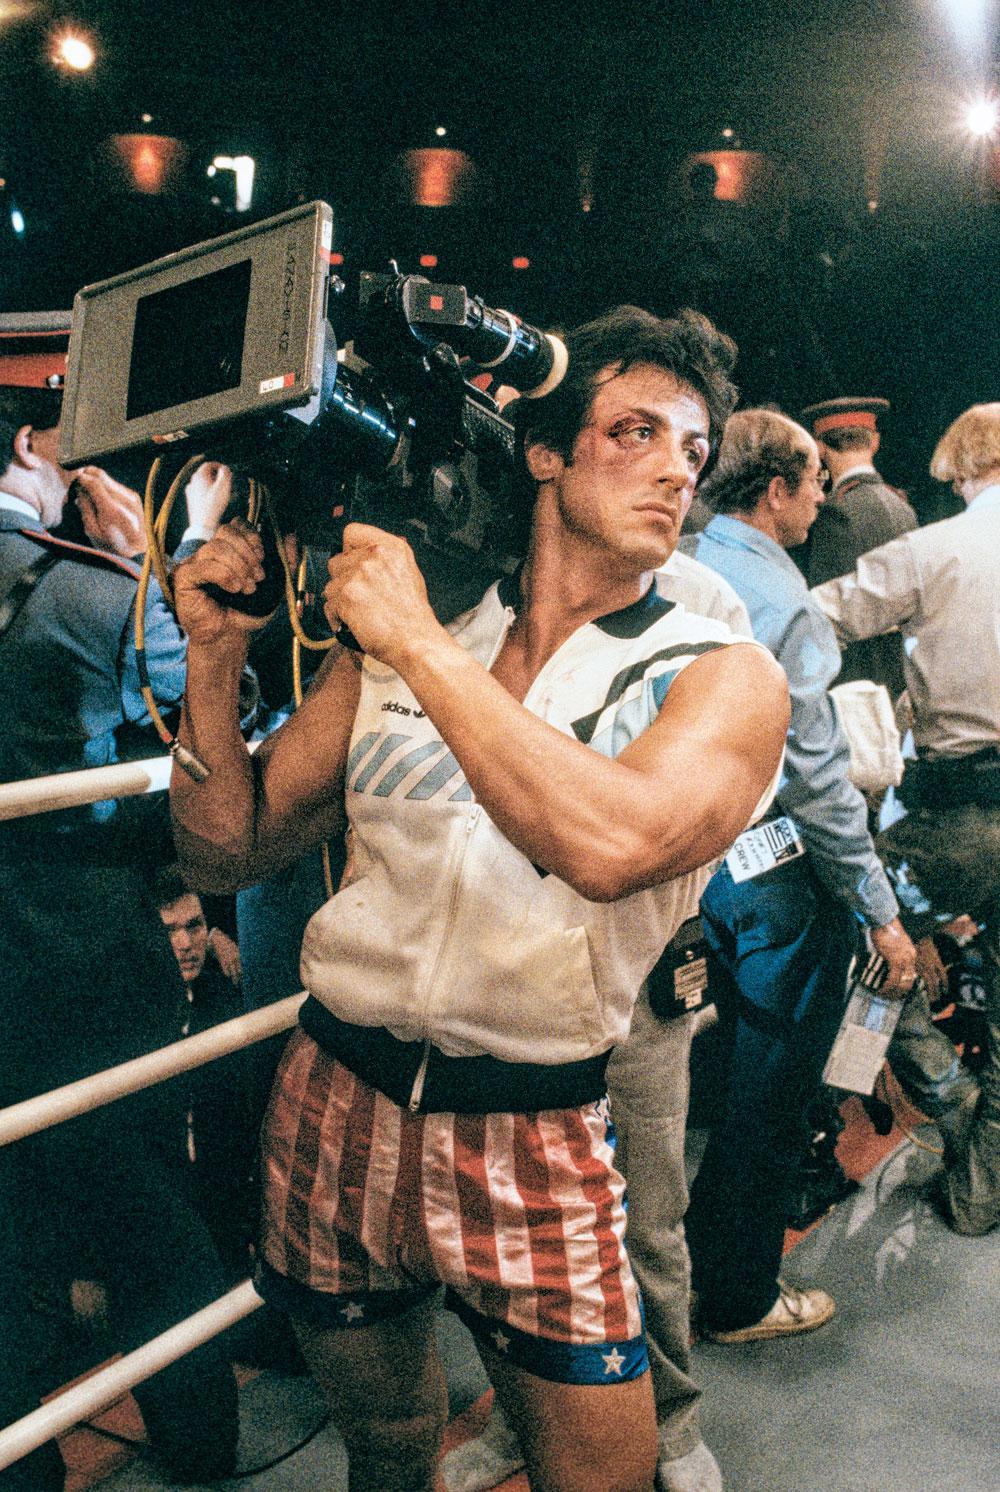 Mis en scène par Sylvester Stallone lui-même,  Rocky IV n'est certes pas le volet le plus réussi de la série.  Non content d'avoir écrit et interprété la saga, Stallone  en a réalisé quatre épisodes, dont le second, le meilleur de l'avis général.